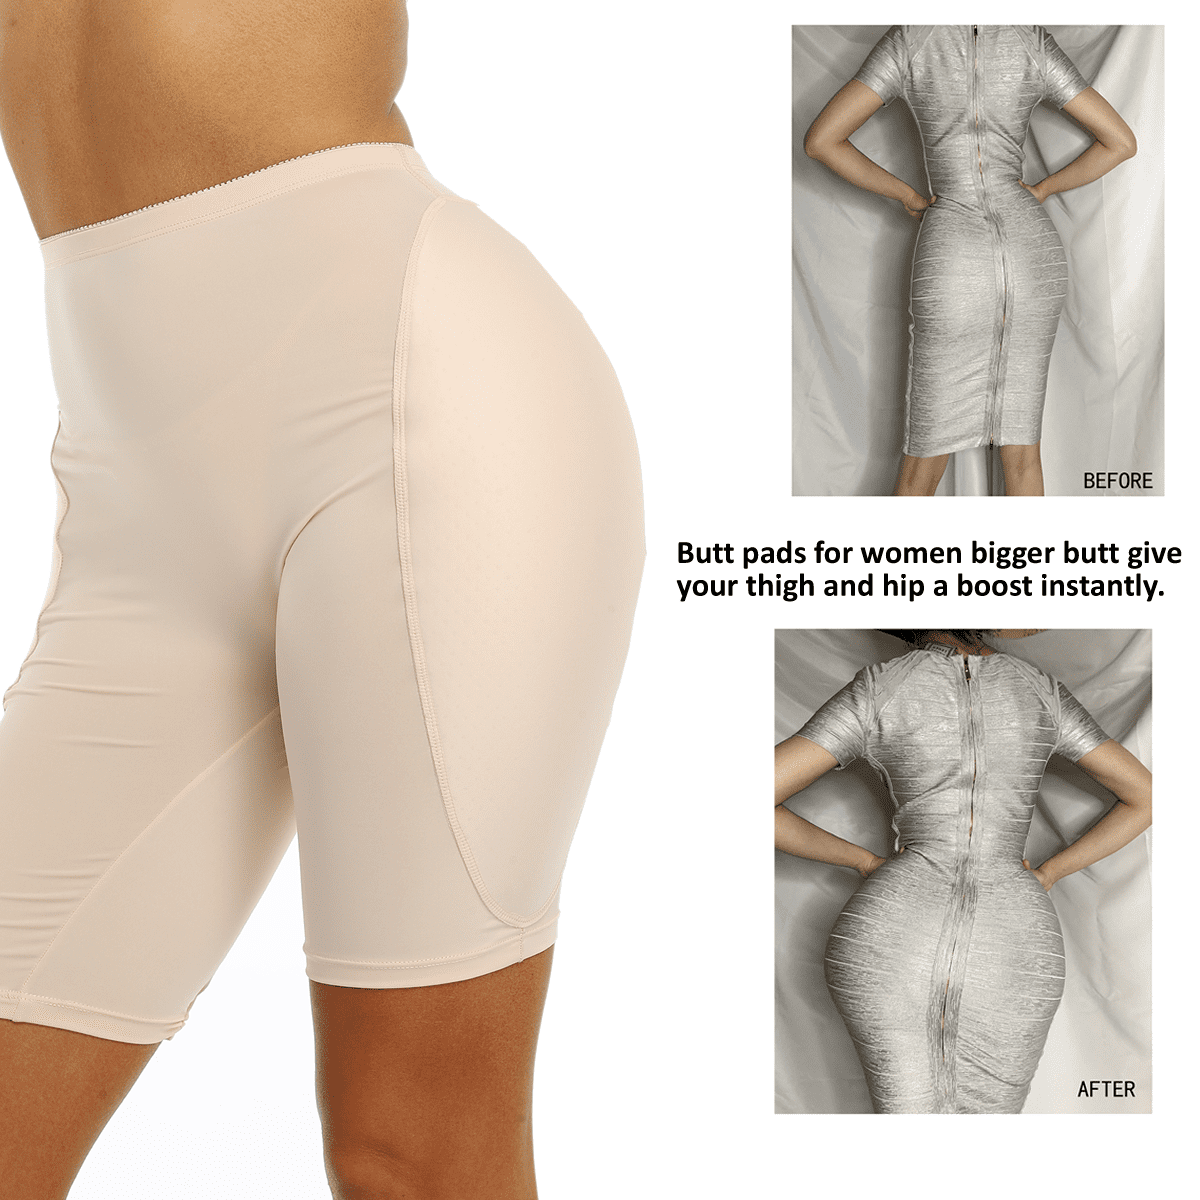 BIMEI Seamless Hip and Butt Padded Shapewear Butt Lifter Panties Hip  Enhancer for Women,One-Piece Shorts,Black,M 